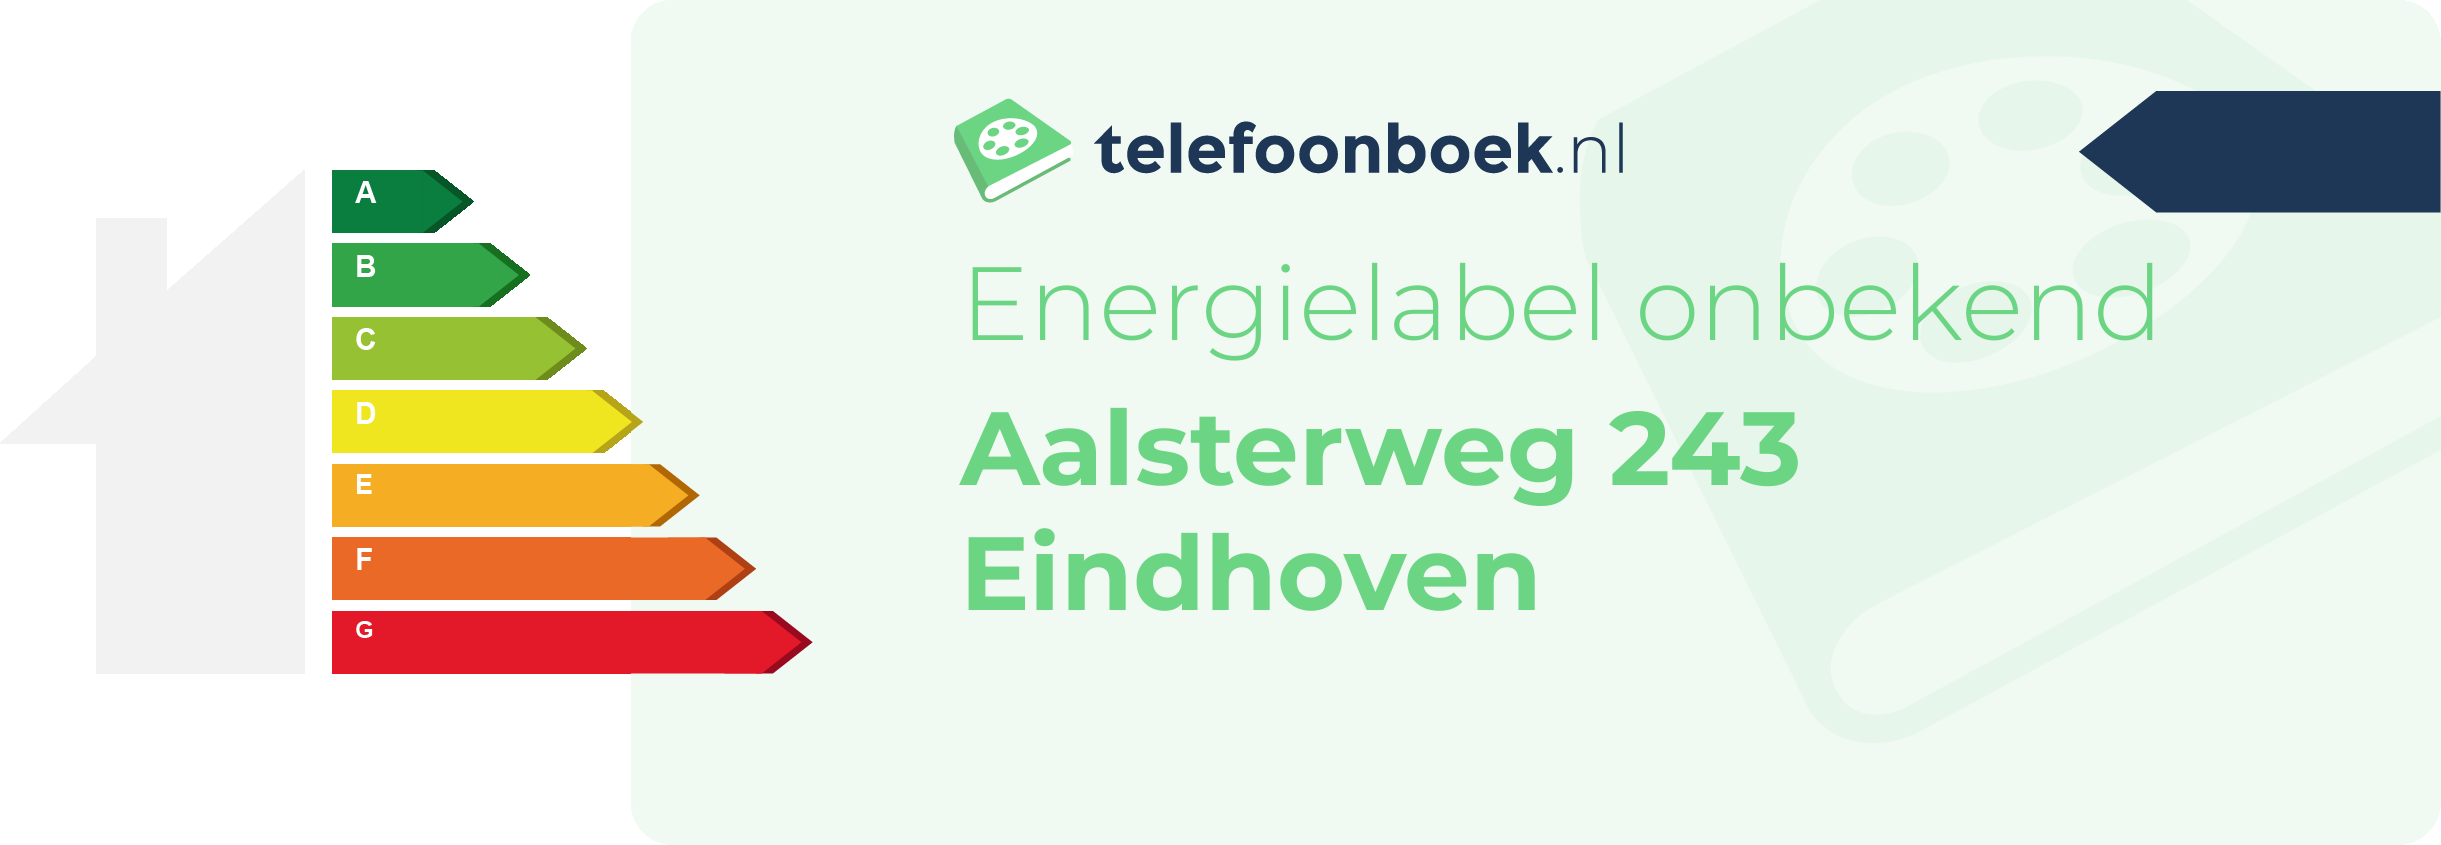 Energielabel Aalsterweg 243 Eindhoven